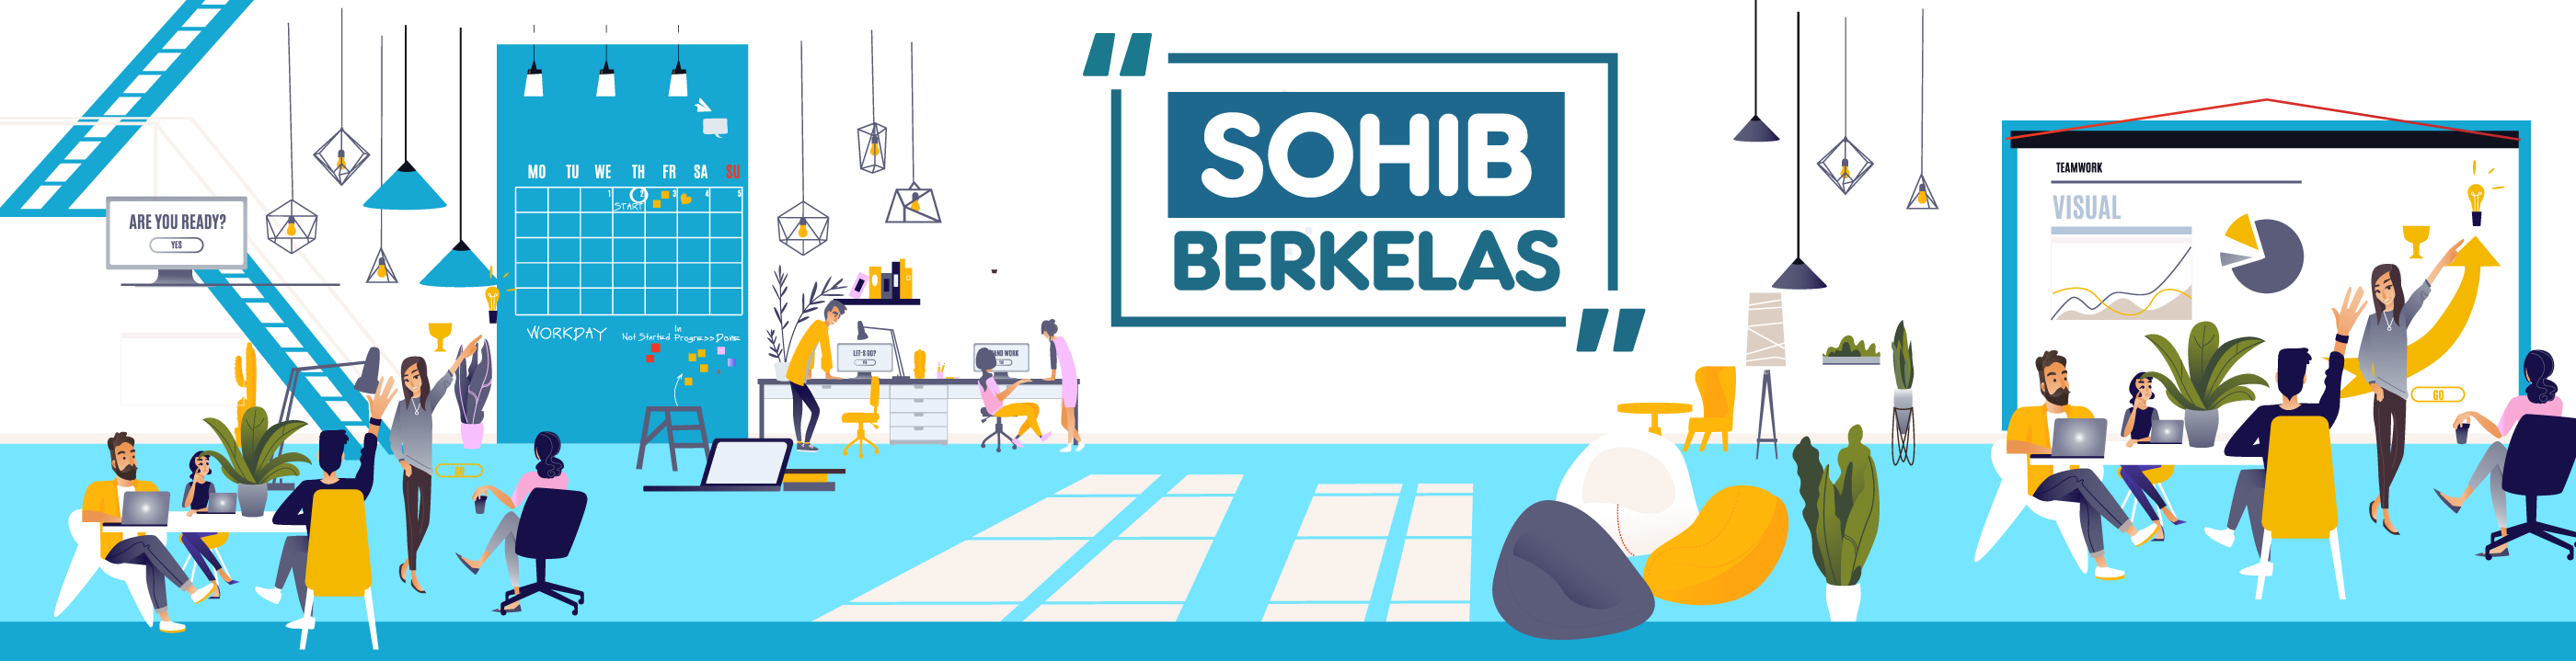 SohIB Berkelas Cirebon 2018_banner_1535610739_sohib_offline.png